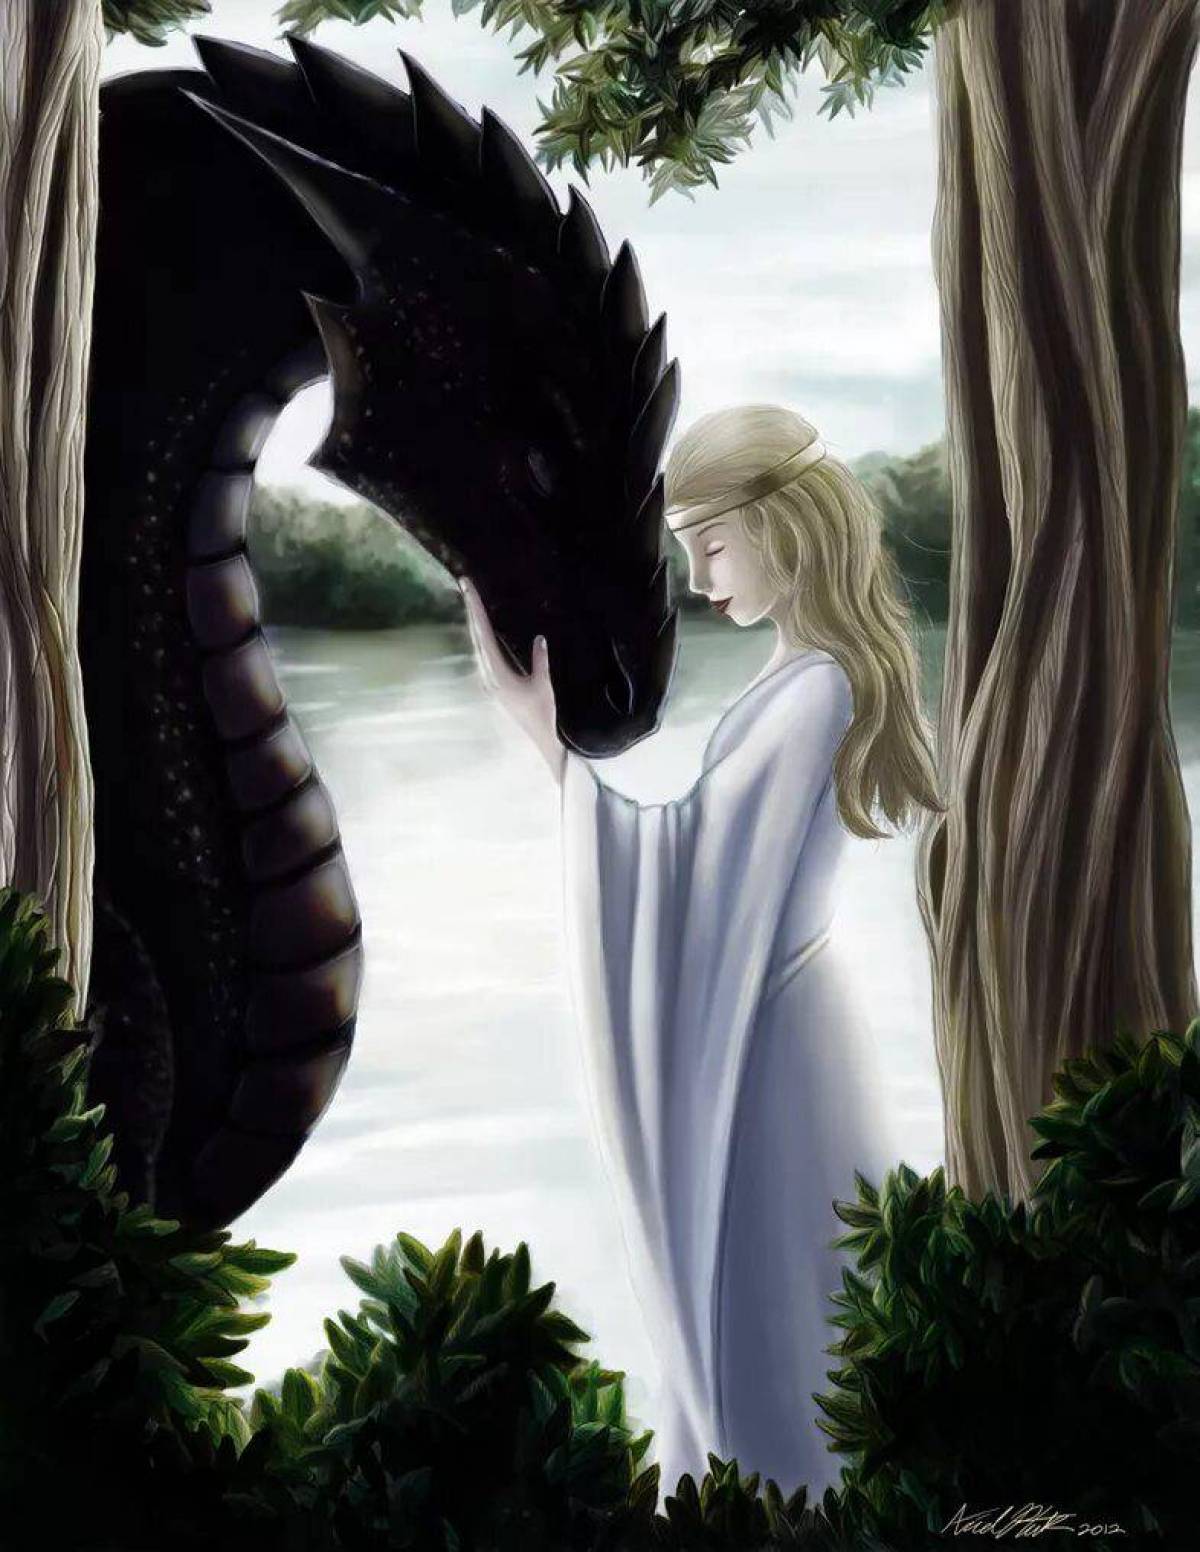 Драконы обожают принцесс. Сказка о царстве драконов, доброй фее и принцессе Изабель. Девушка и дракон. Дракон и девушка лубов. Девочка и дракон.